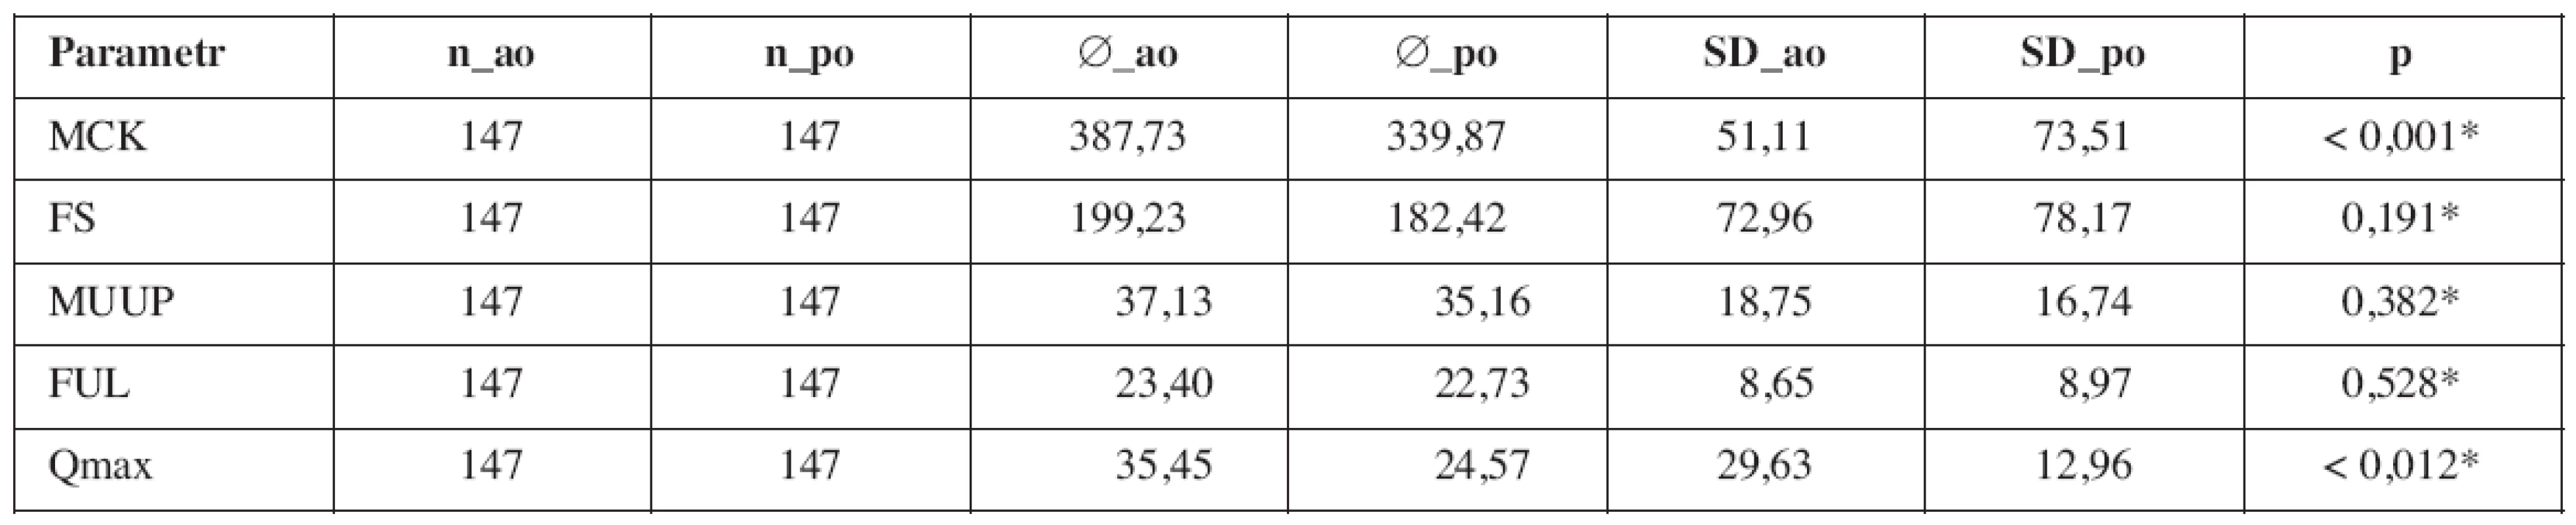 Porovnání průměrů urodynamických parametrů pacientů skupiny TVT OTM před (_ao) a po (_po) operaci